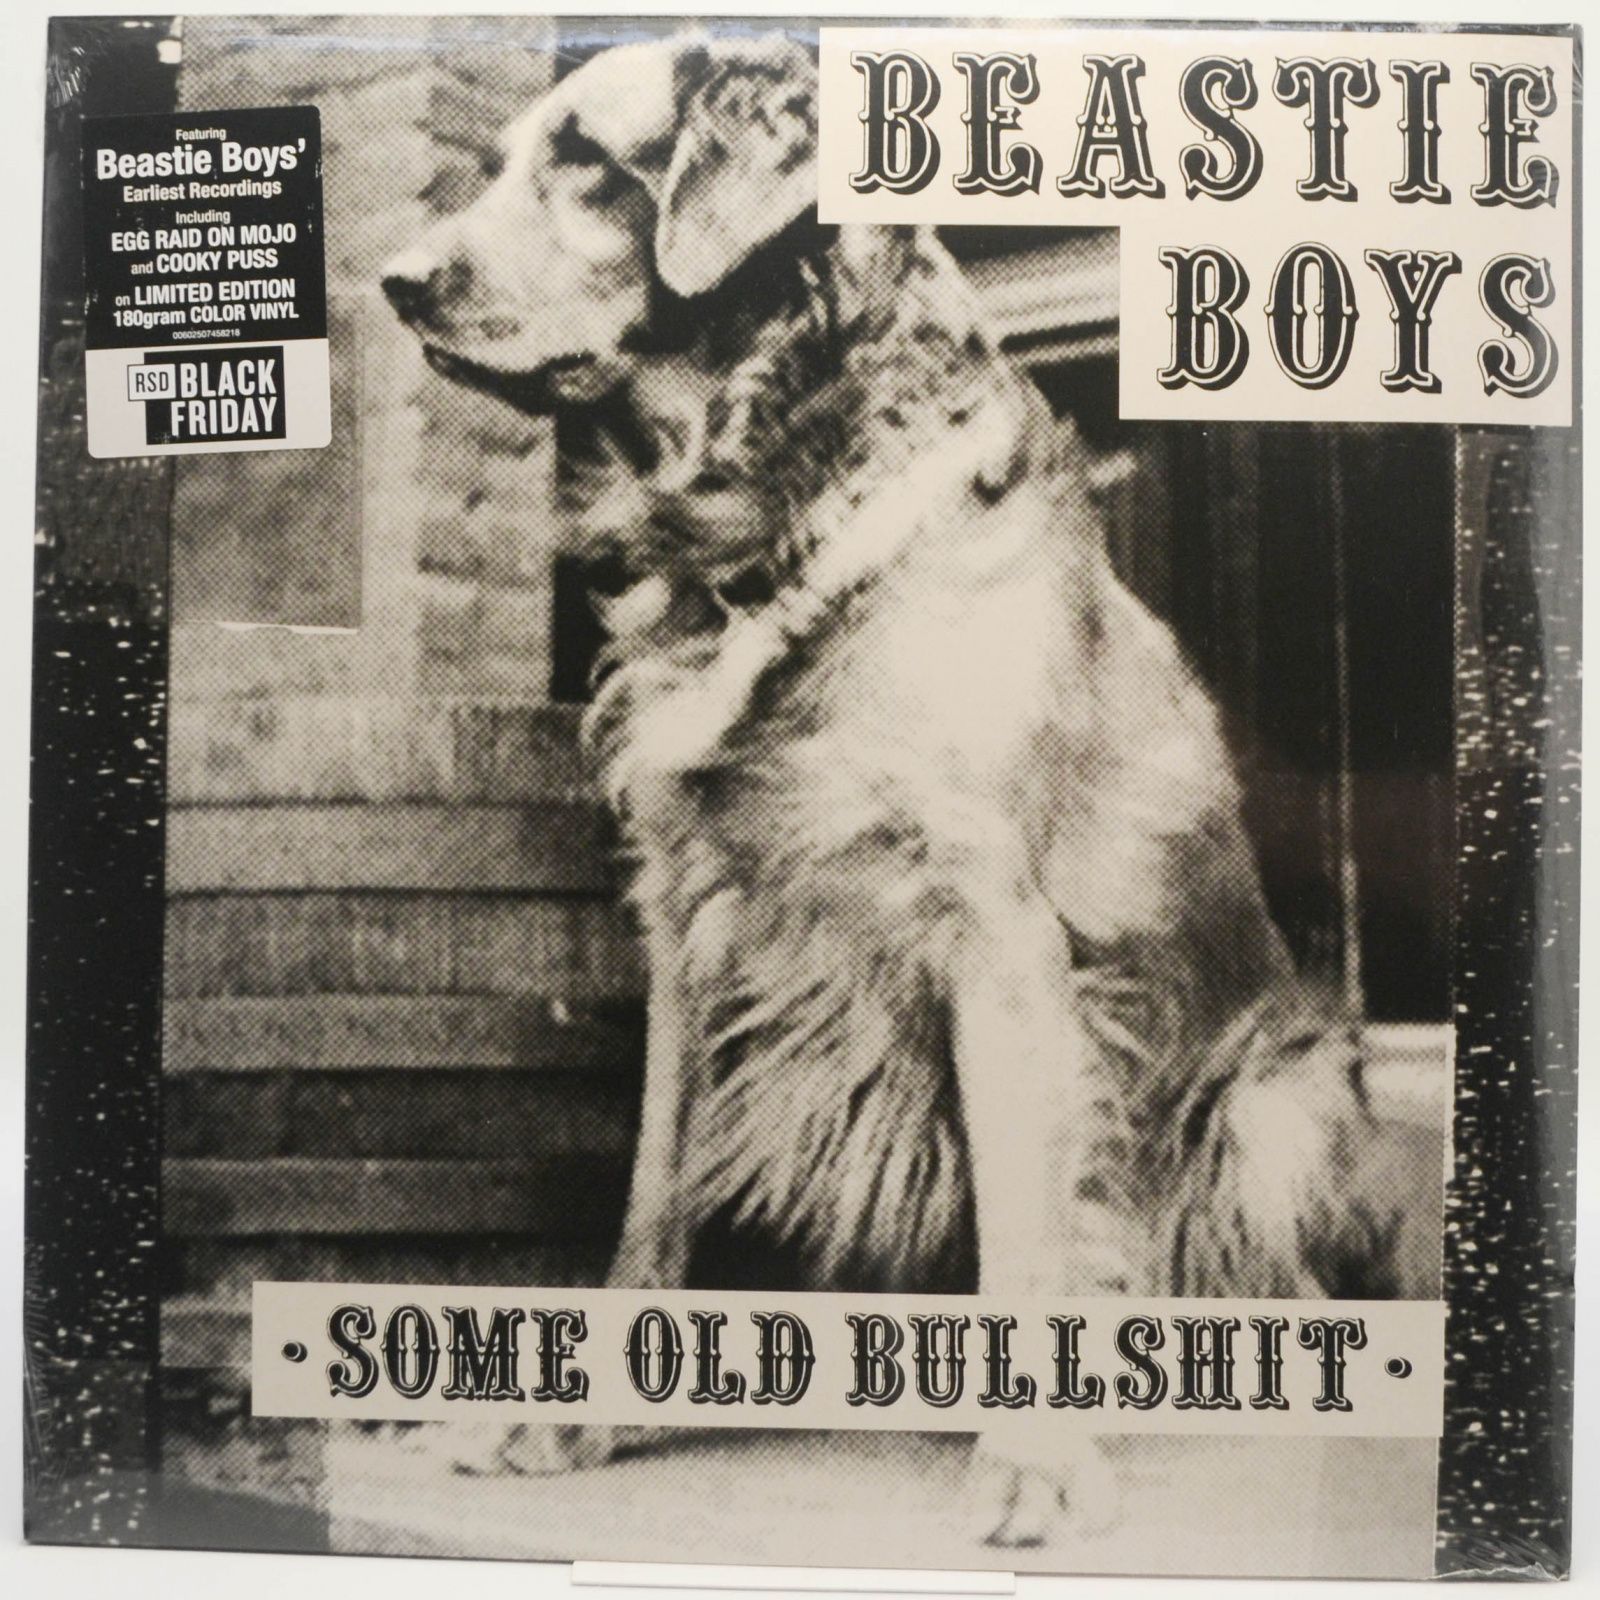 Beastie Boys — Some Old Bullshit, 2020